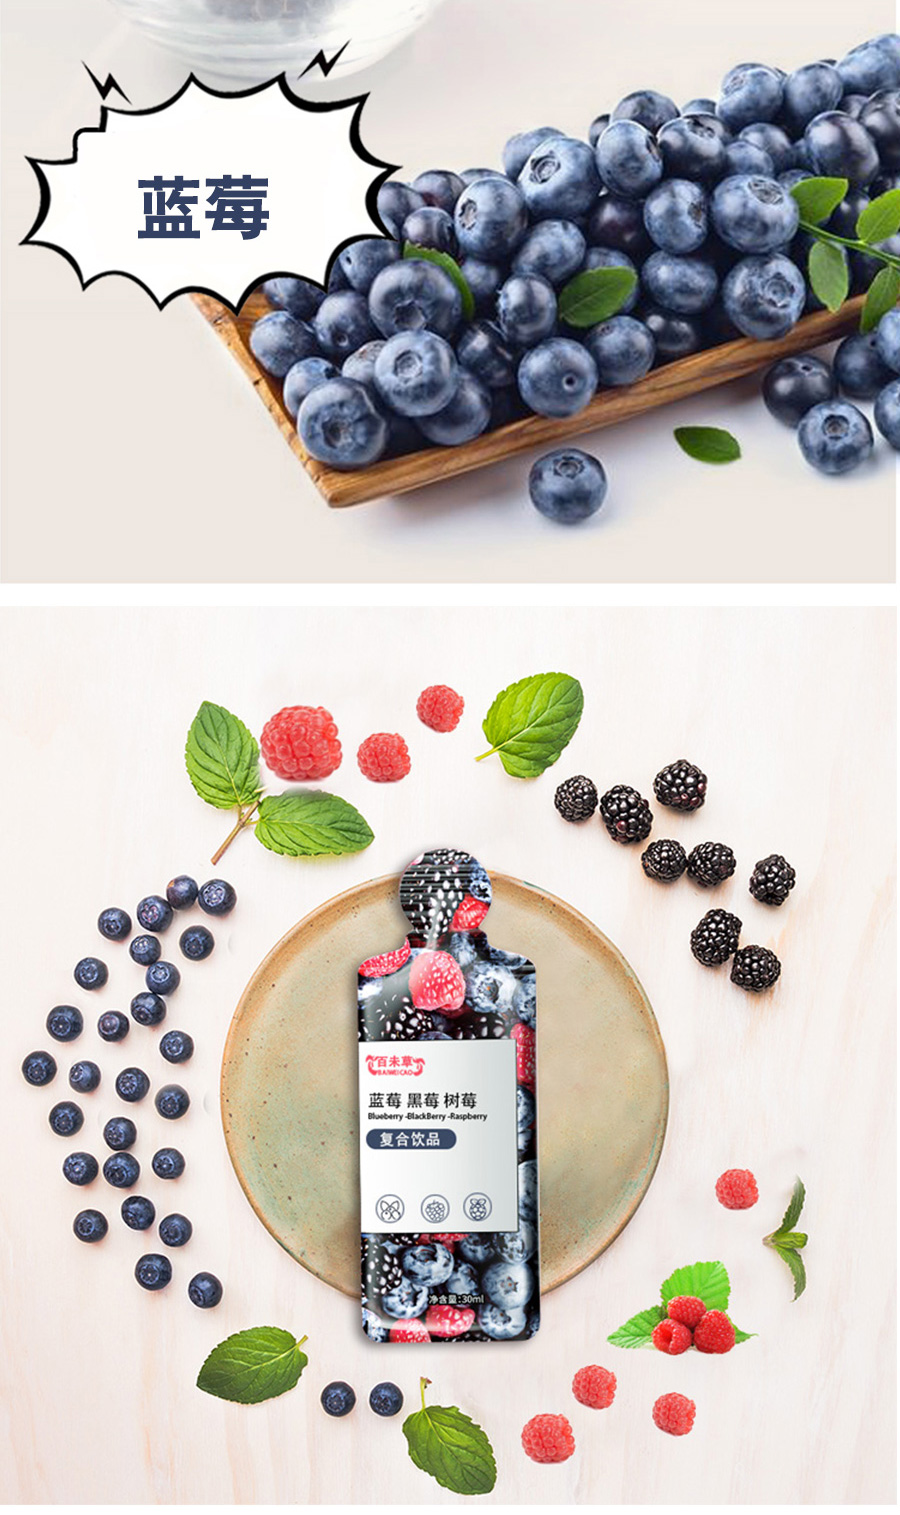 百未草蓝莓黑莓树莓复合饮品批发 多规格异袋装植物饮料加工 山东